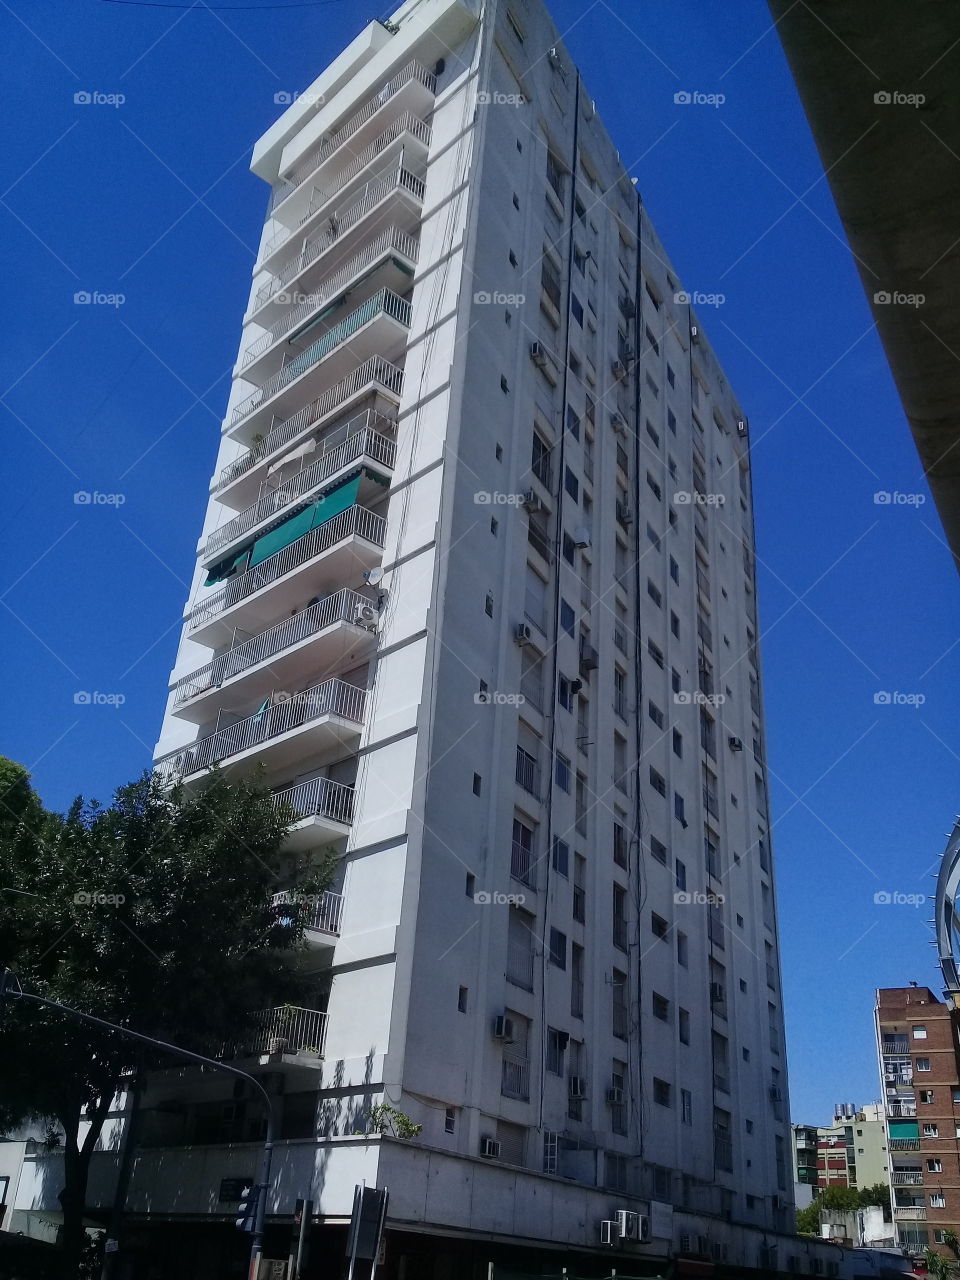 imponente rascacielos recortado contra un cielo de verano despejado de verano y ubicado en una céntrica avenida de la ciudad de Buenos Aires.